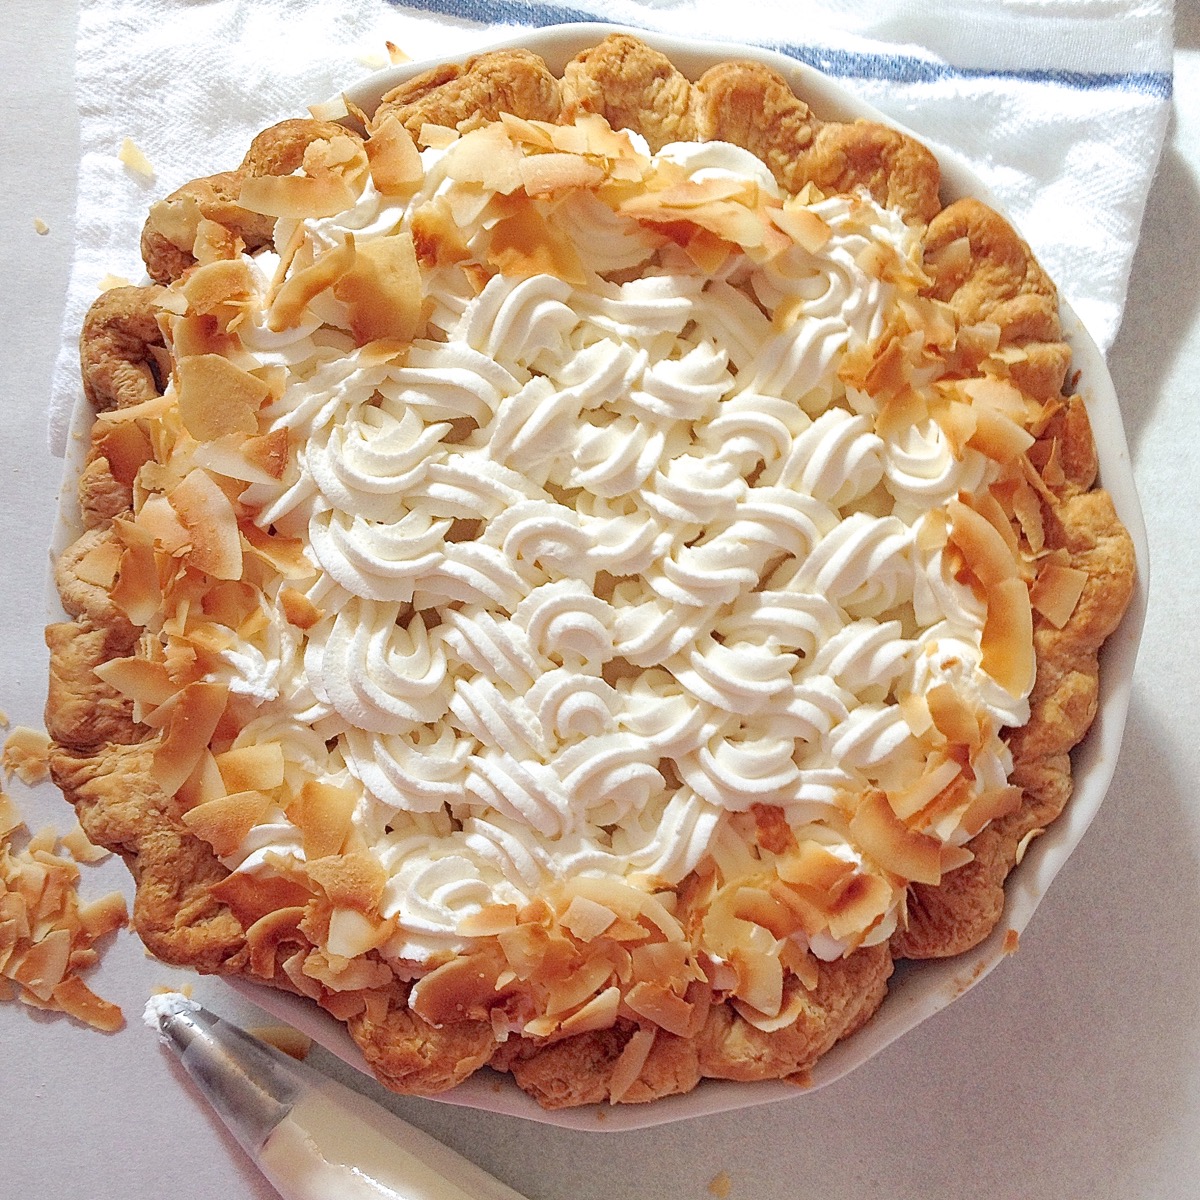 How to blind bake a pie crust via @kingarthurflour